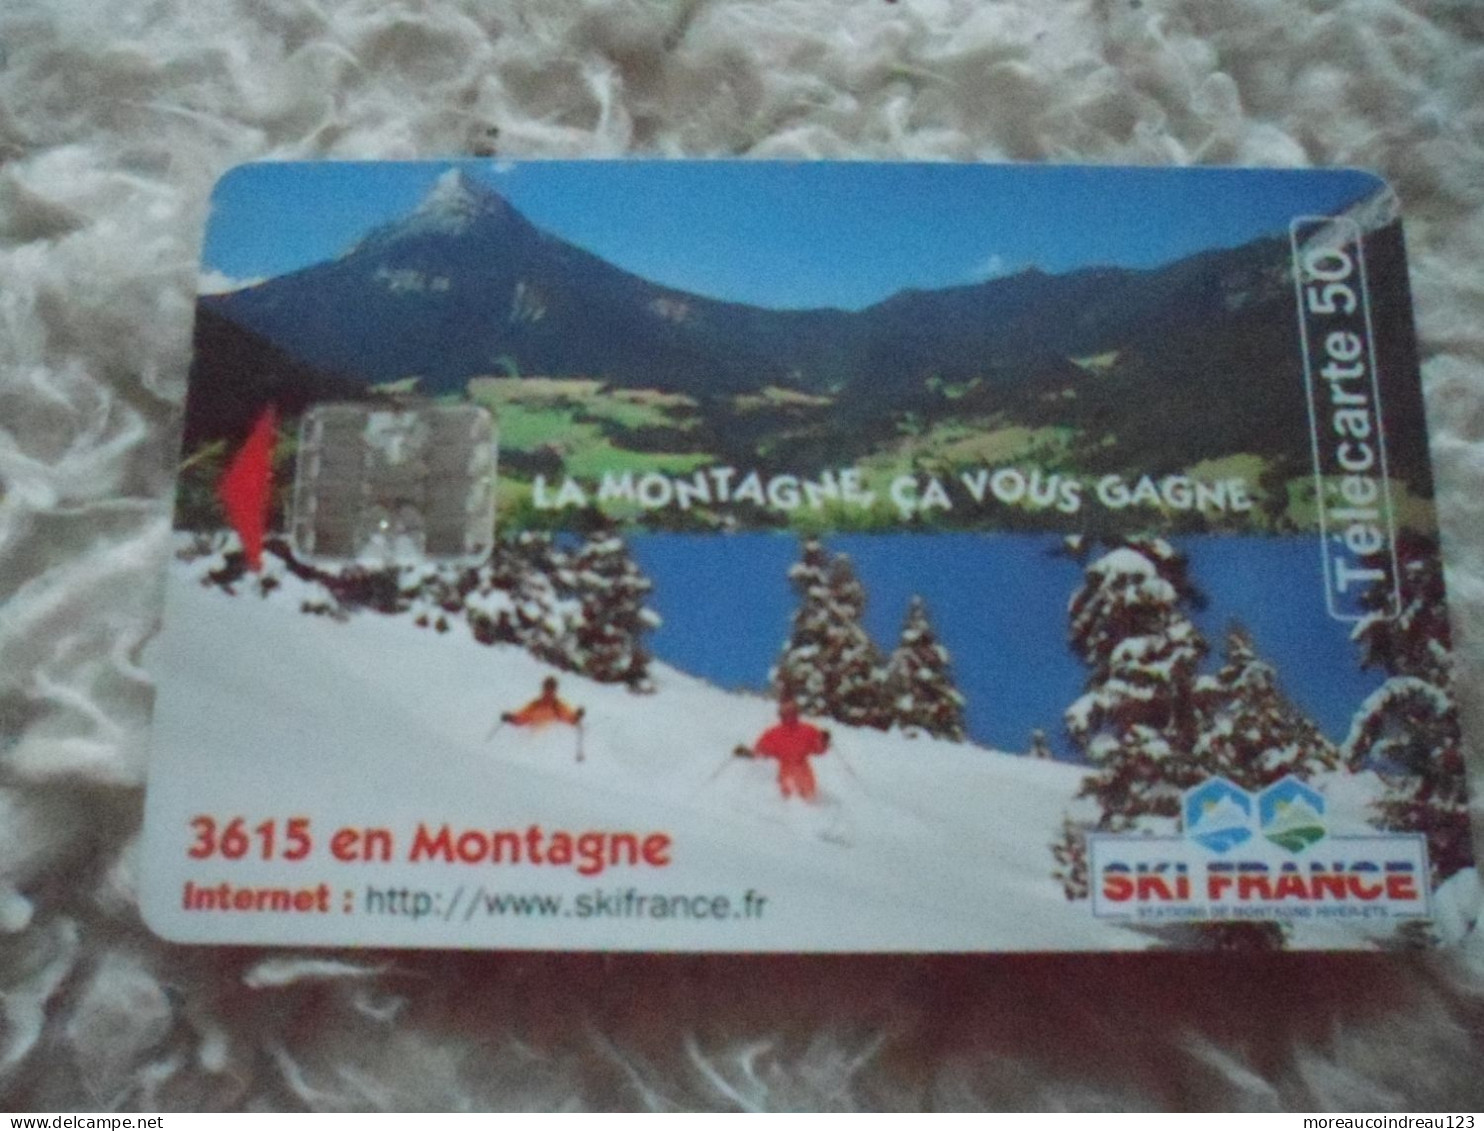 Télécarte Ski France La Montagne Ca Vous Gagne - Opérateurs Télécom